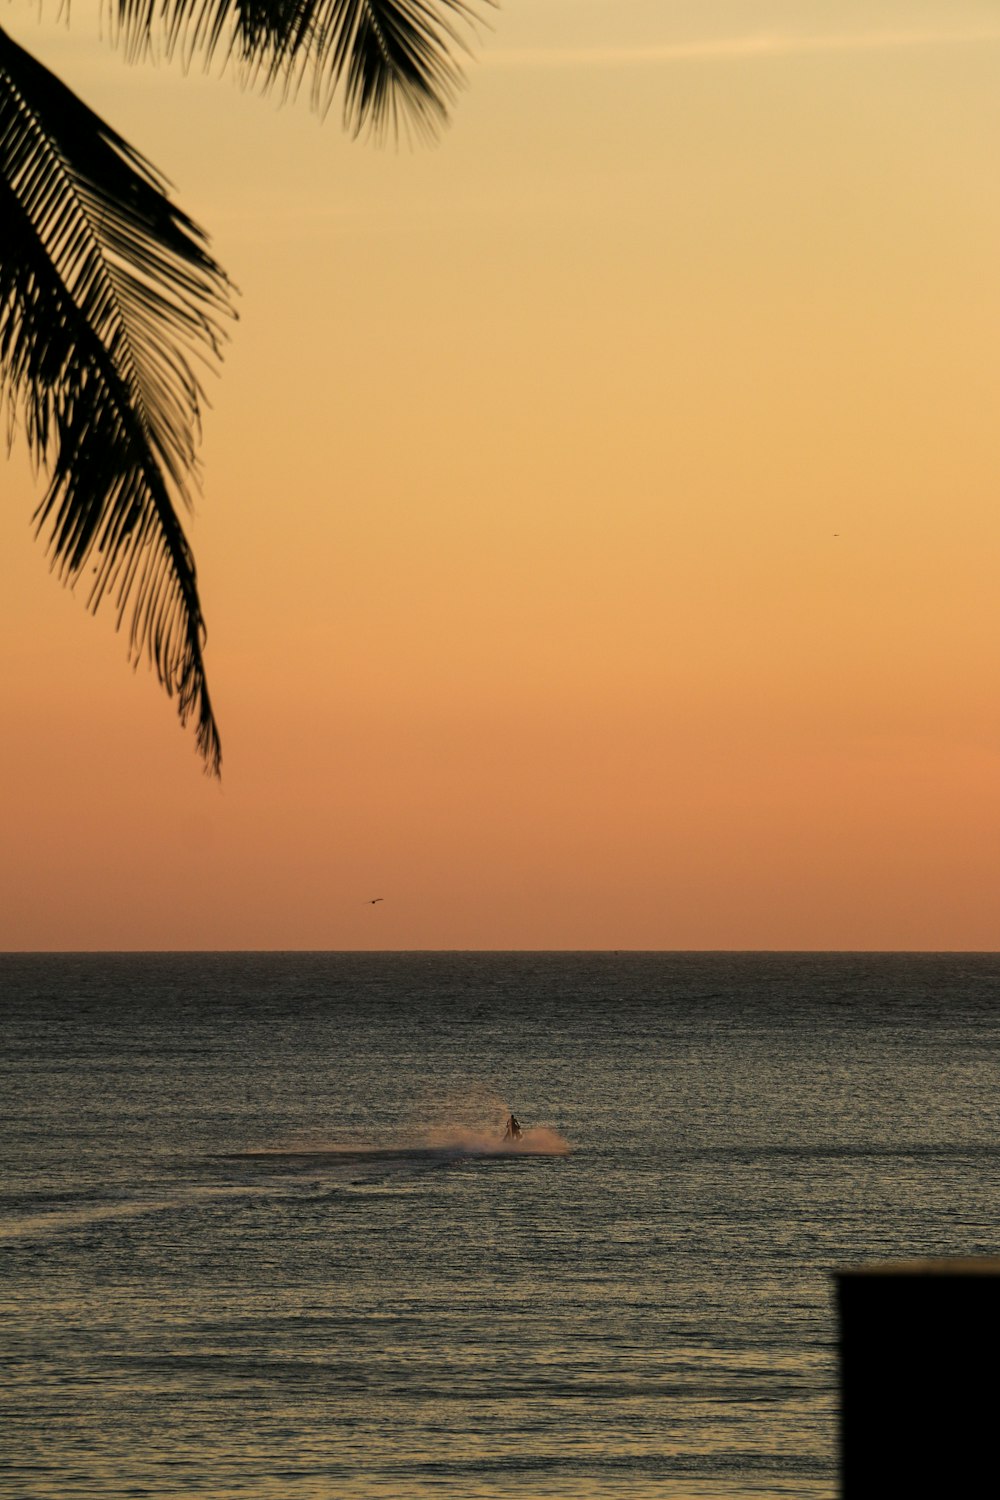 una persona en una tabla de surf en el océano al atardecer